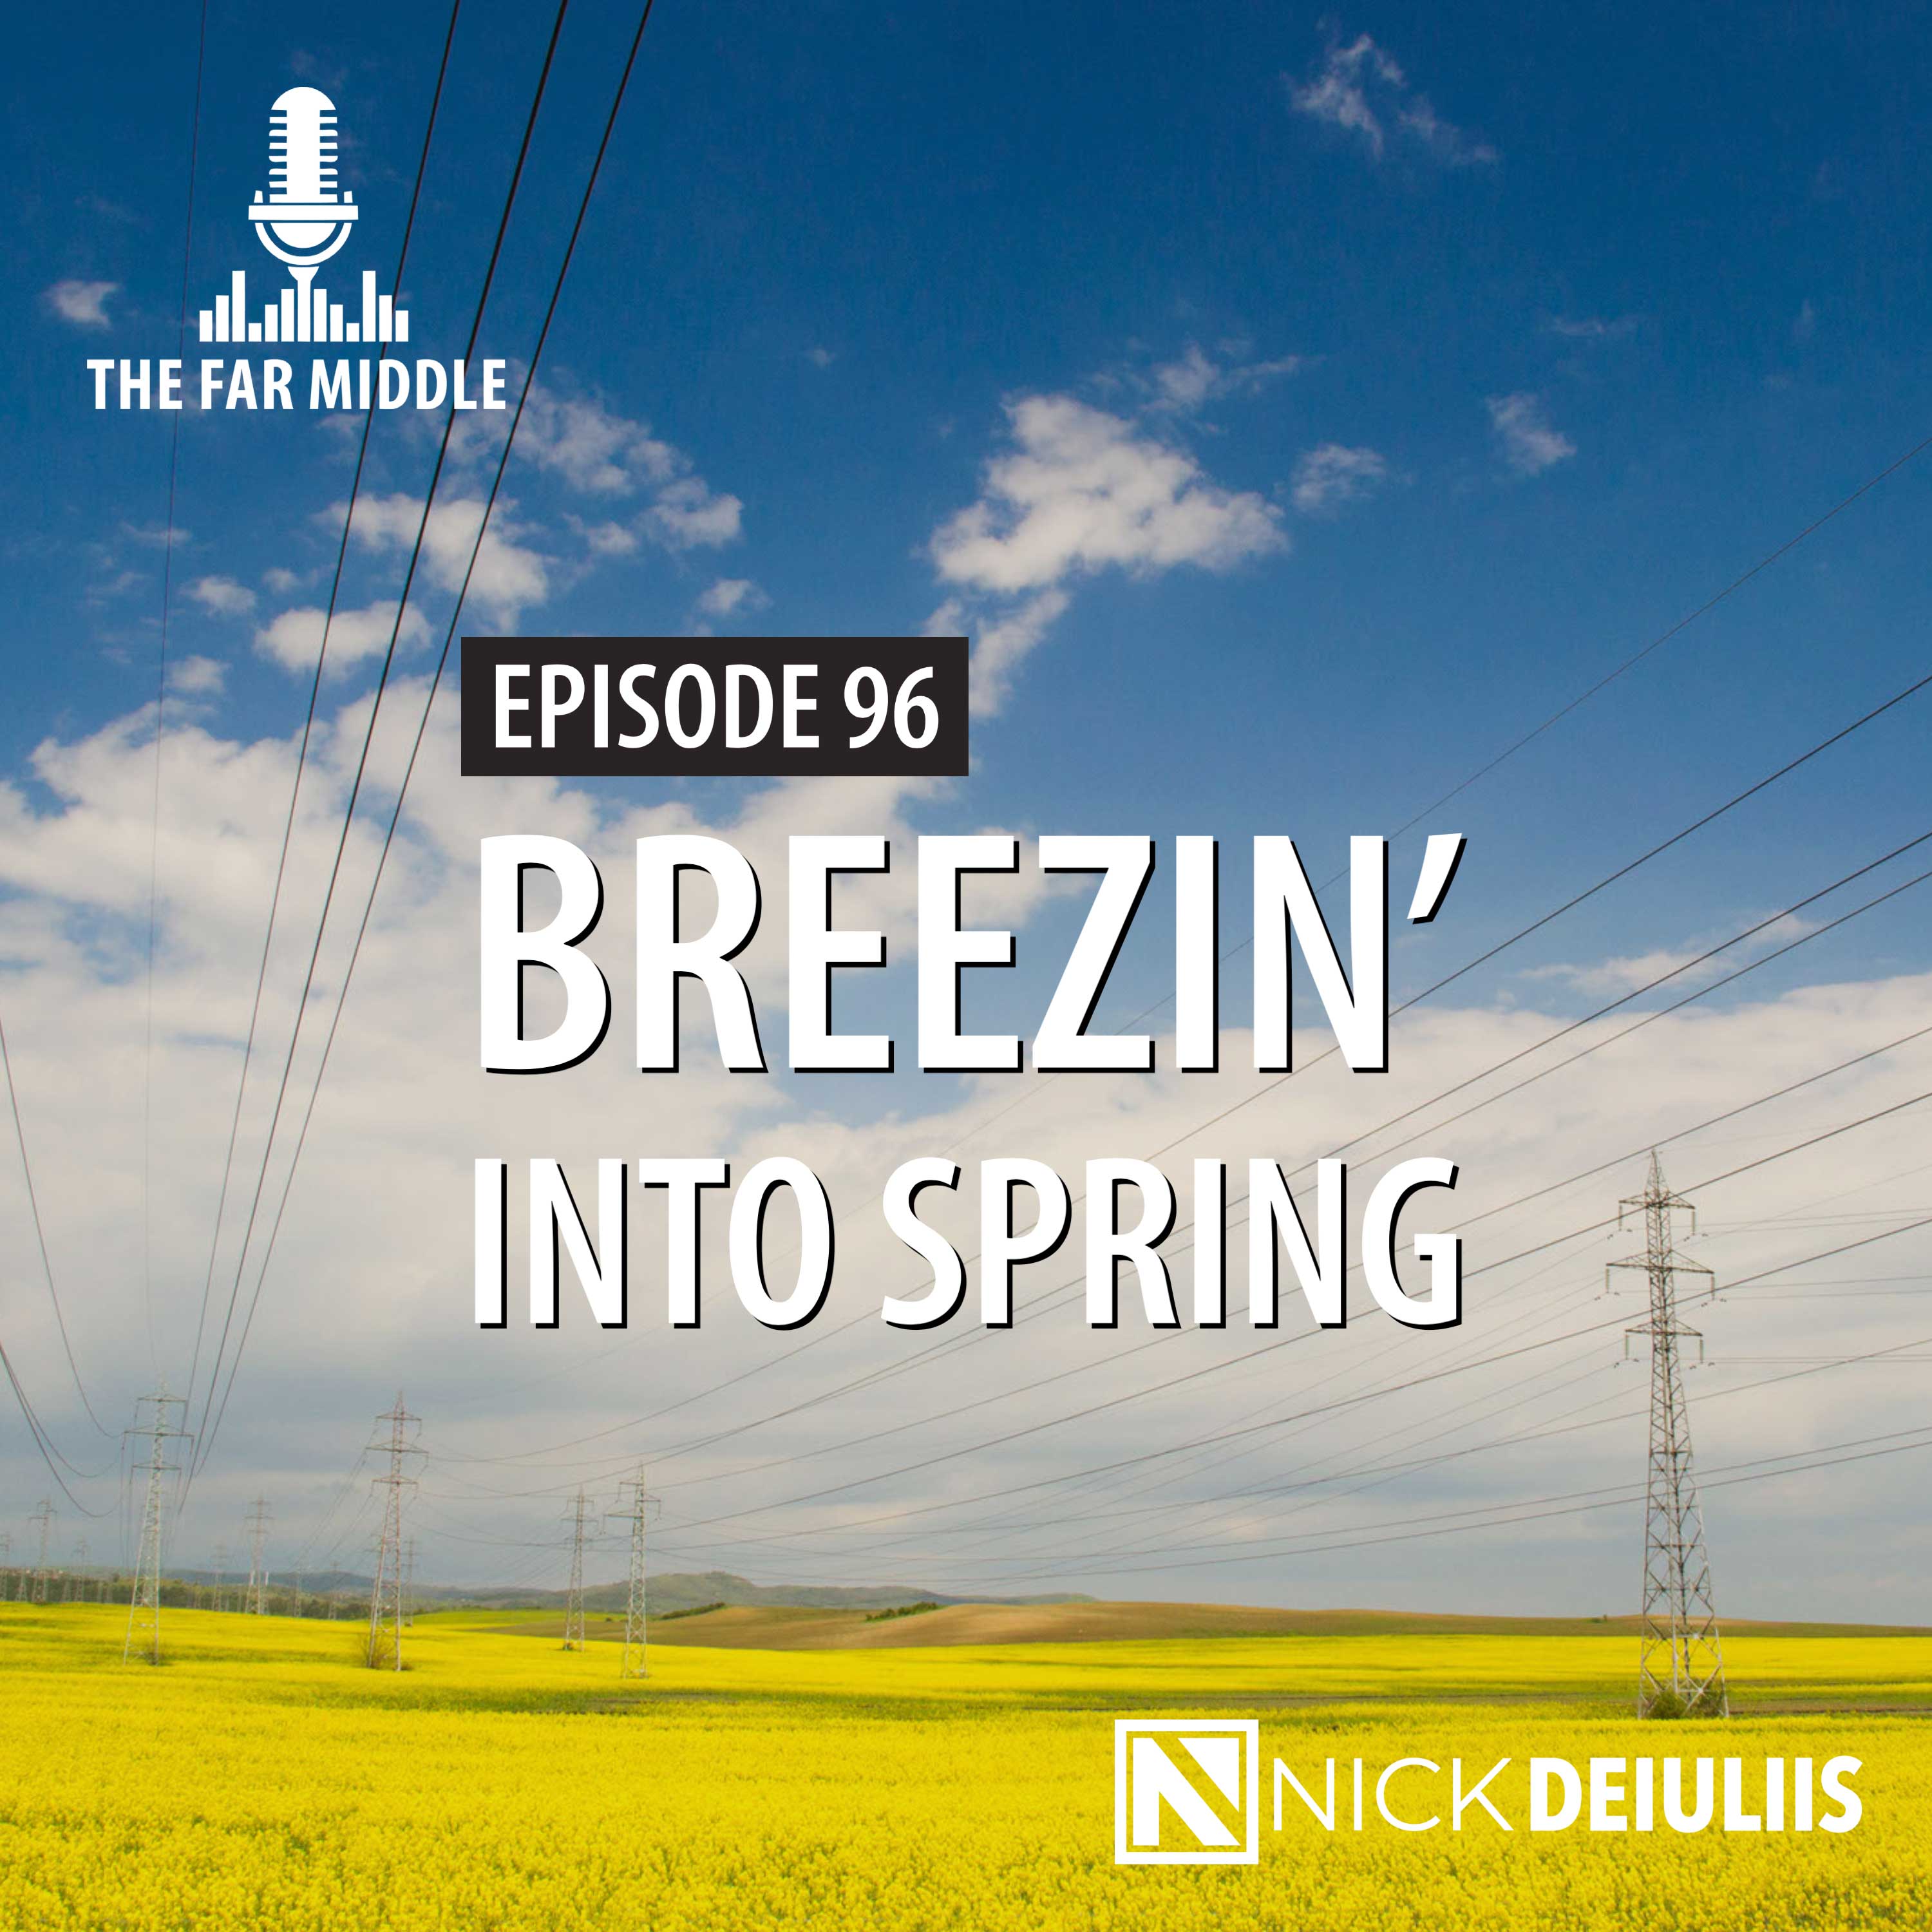 Breezin’ into Spring